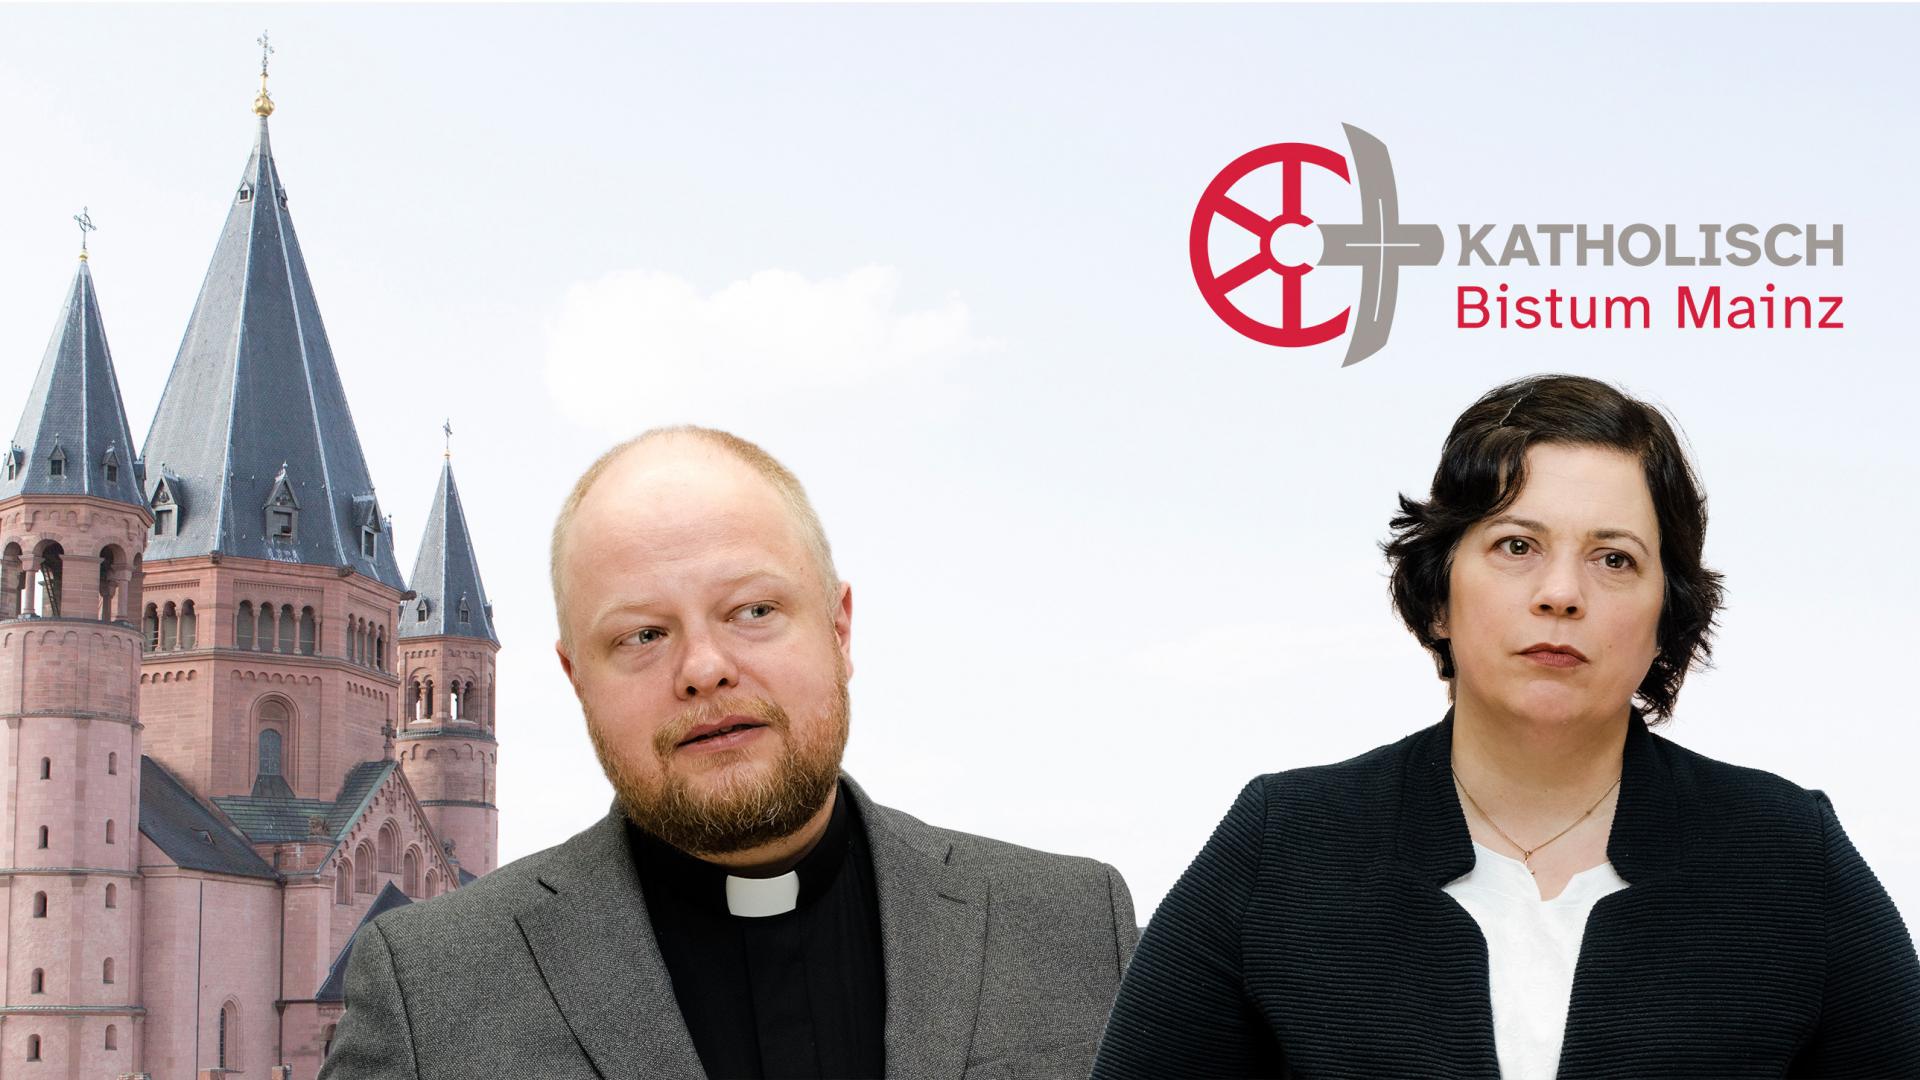 Generalvikar und Bevollmächtigte im Bistum Mainz